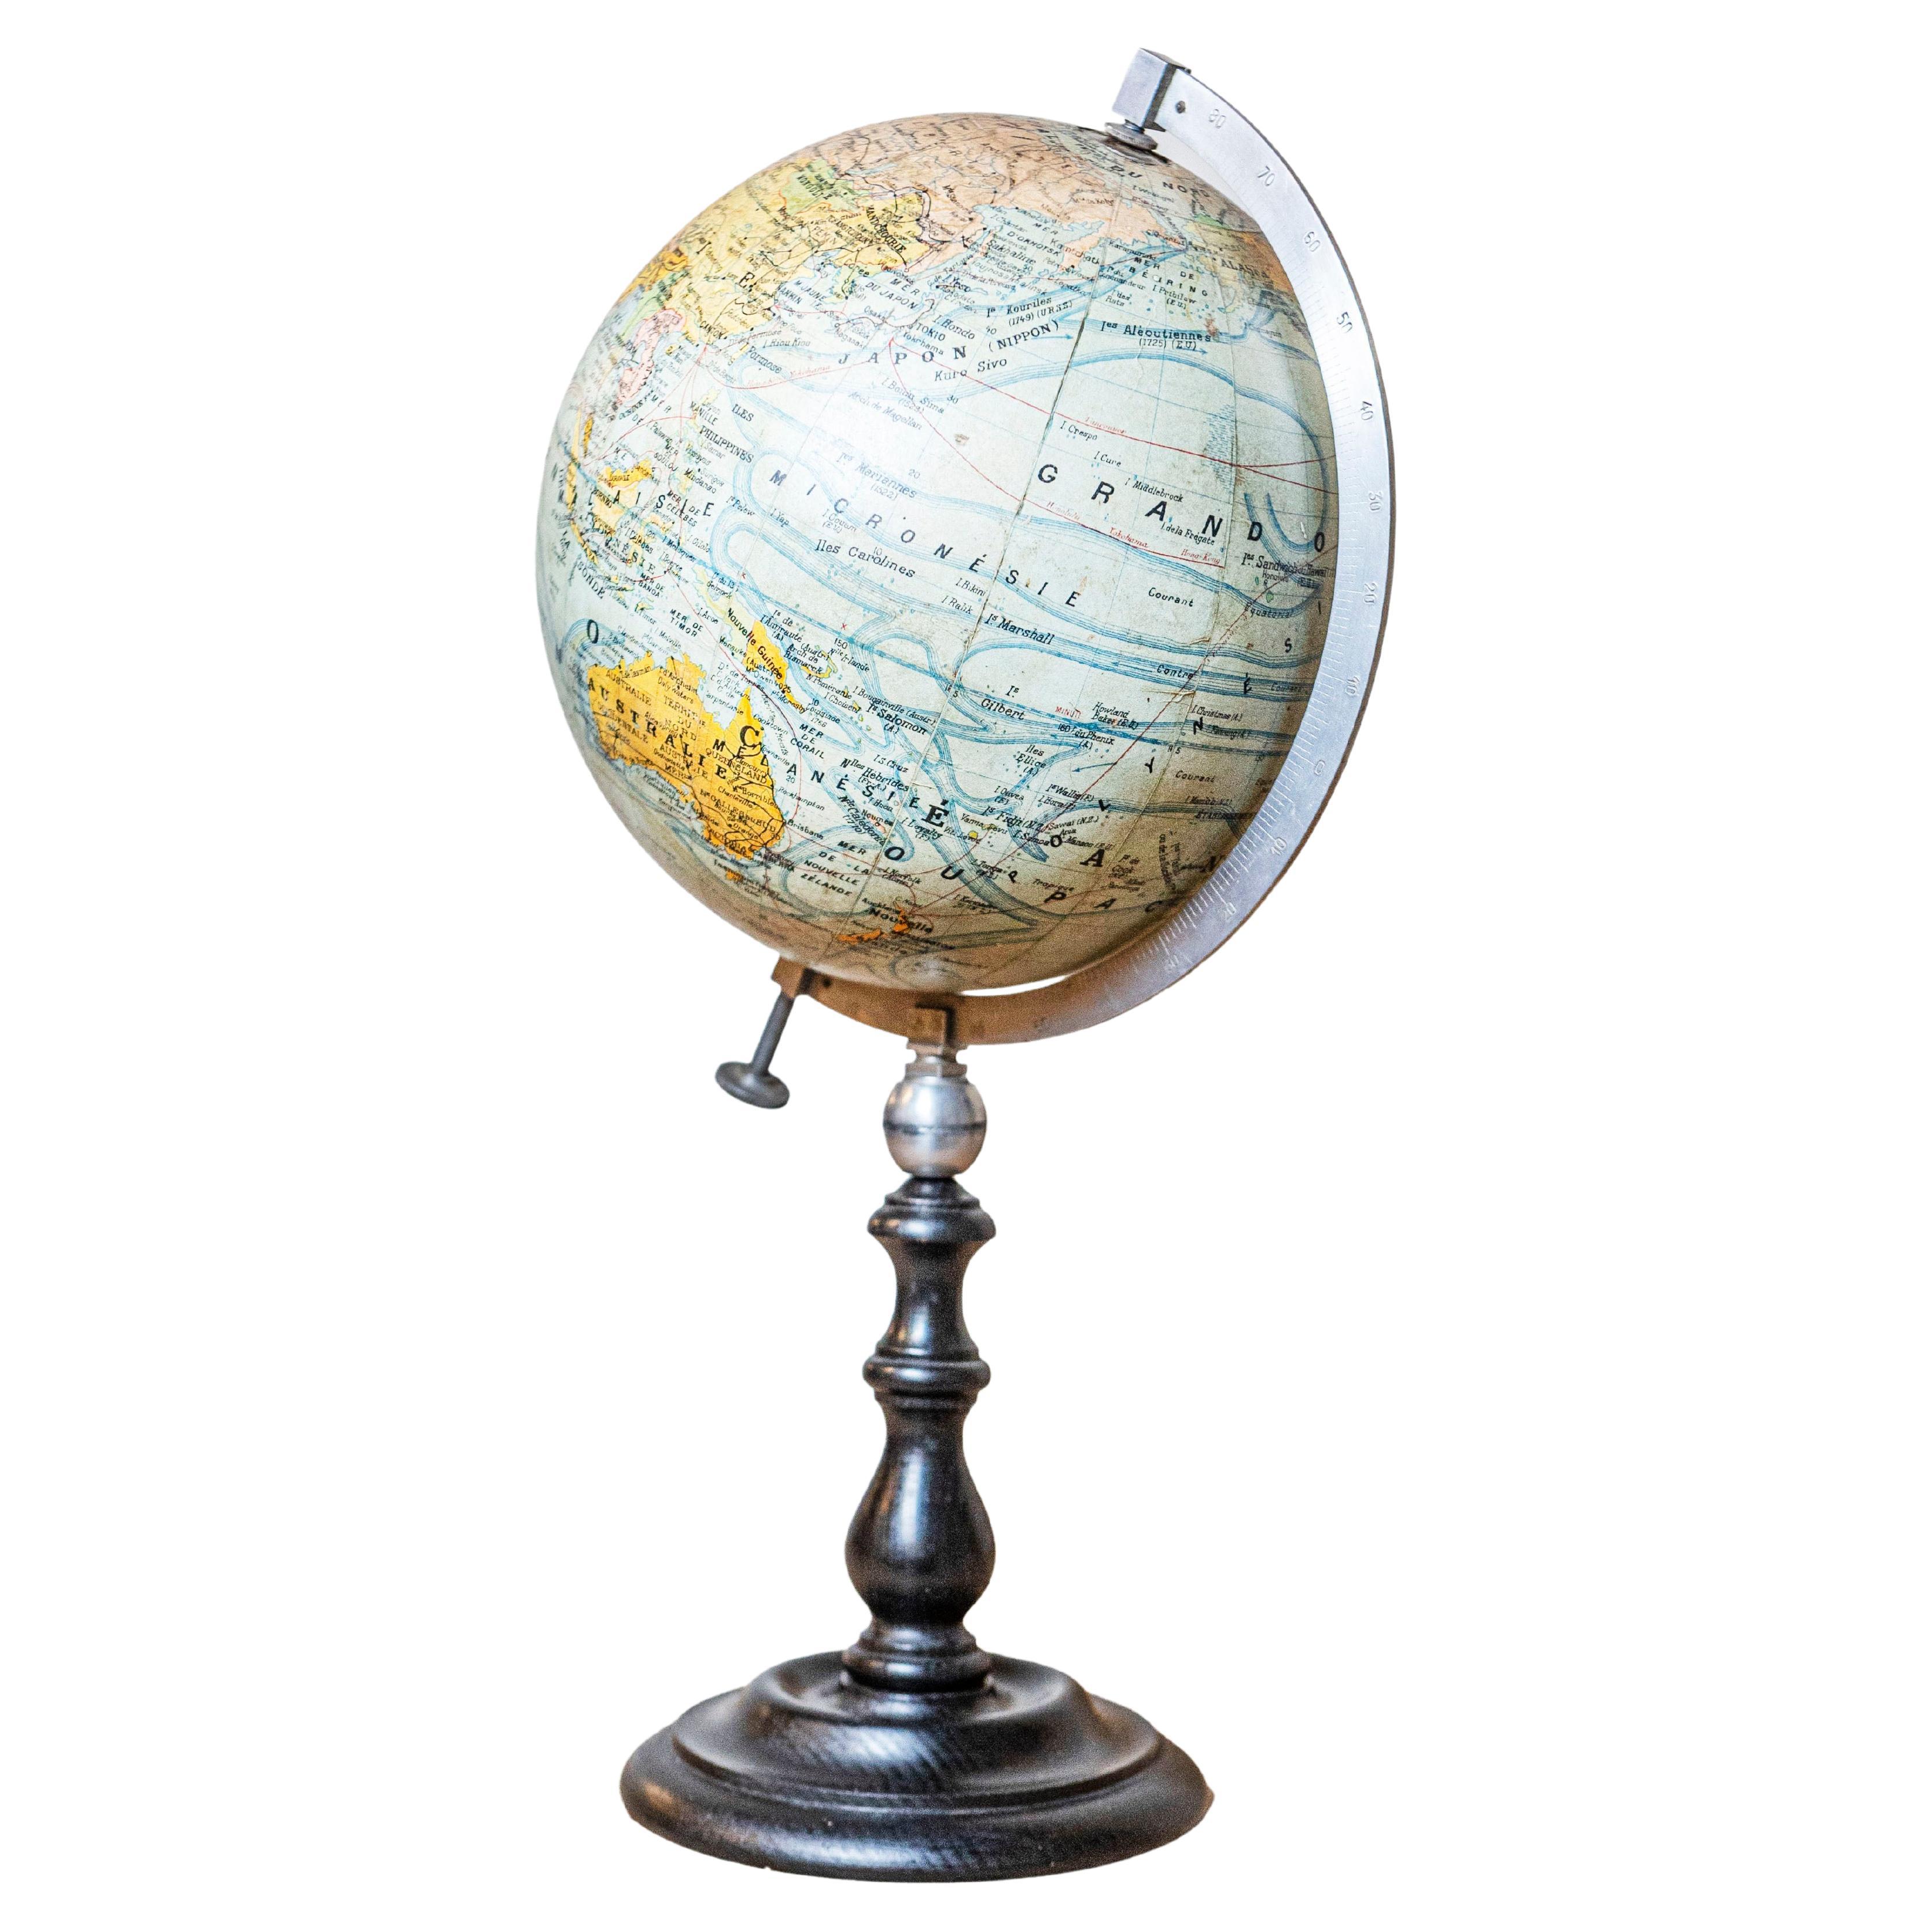 Petit globe terrestre français du 20e siècle sur socle en bois noir tourné